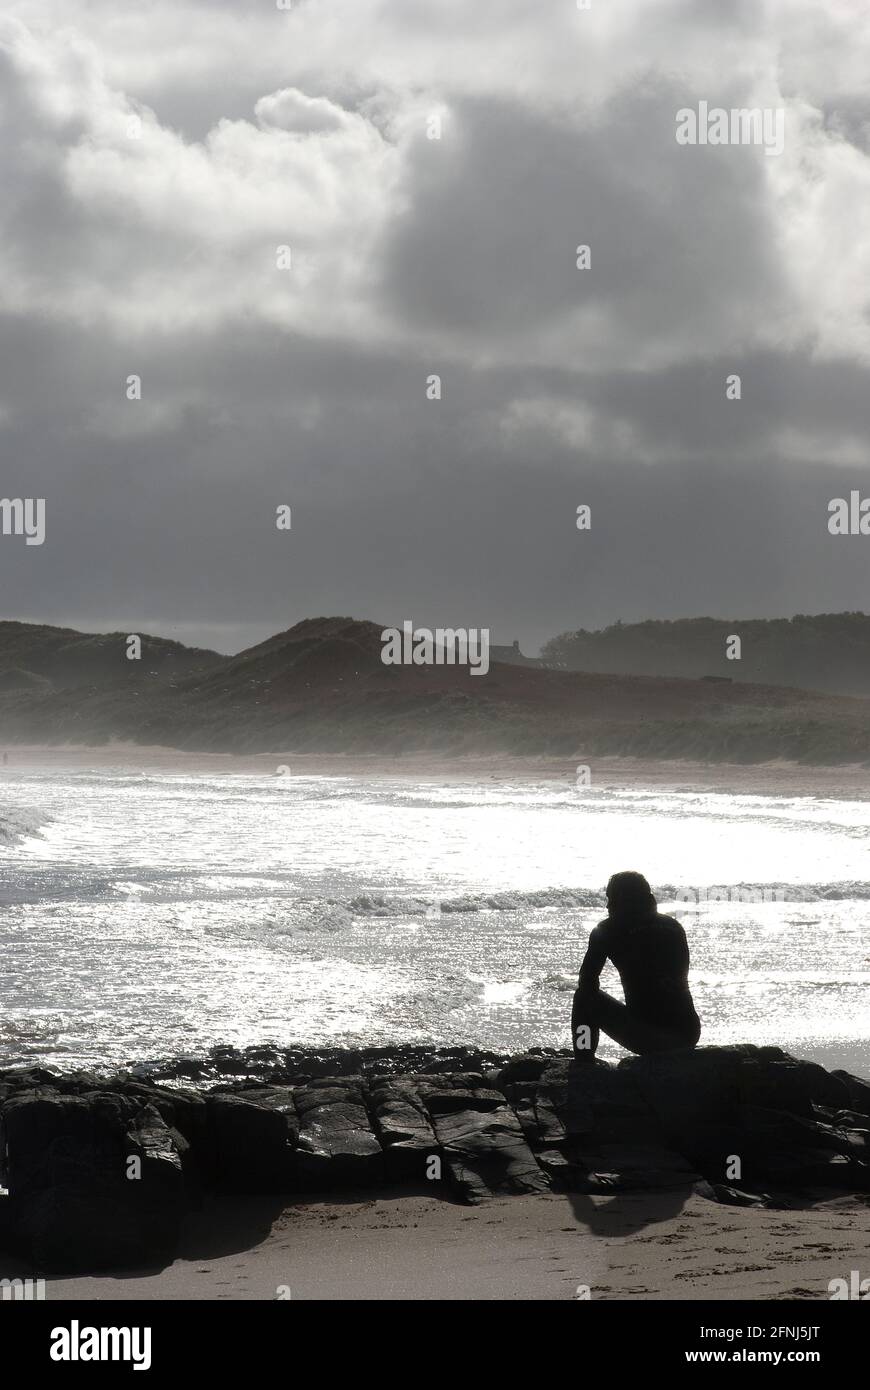 Imagen en formato vertical de una sola figura en silencio sentado sobre rocas en un entorno costero con un plateado mar y fondo de dunas y nubes Foto de stock